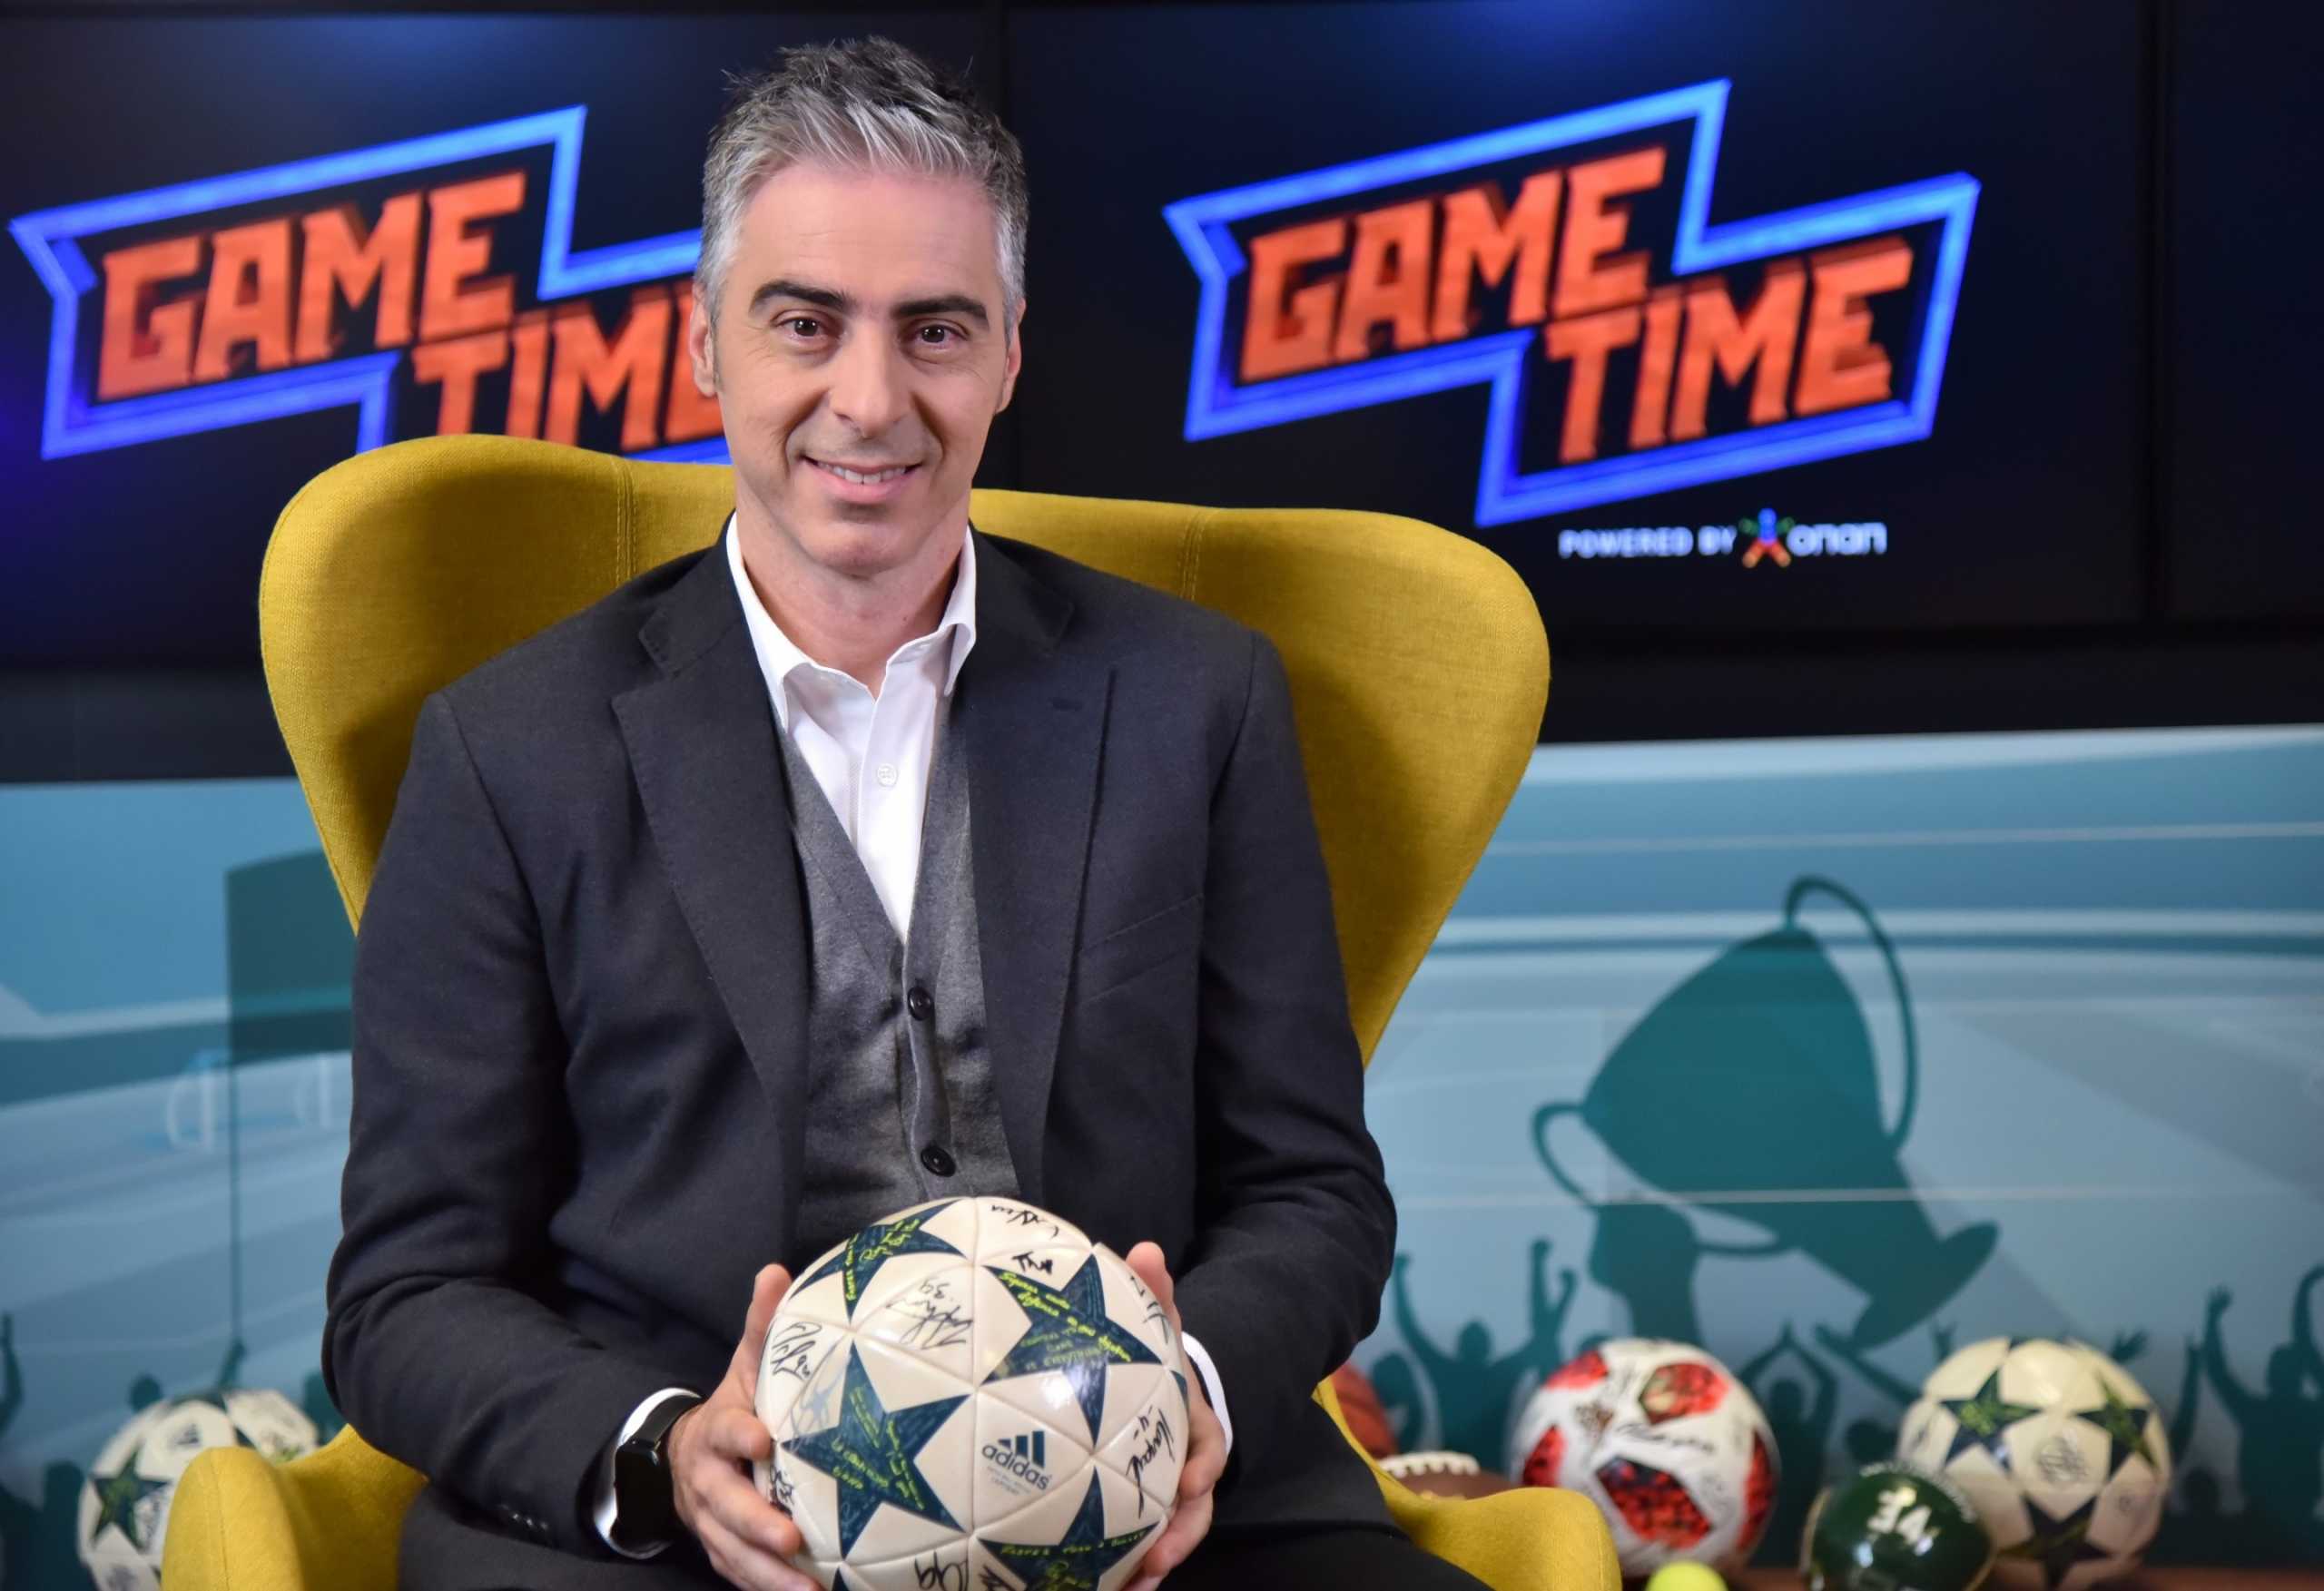 ΟΠΑΠ Game Time: Serie A, Super League και Premier League στο μικροσκόπιο του Γιώργου Λιώρη